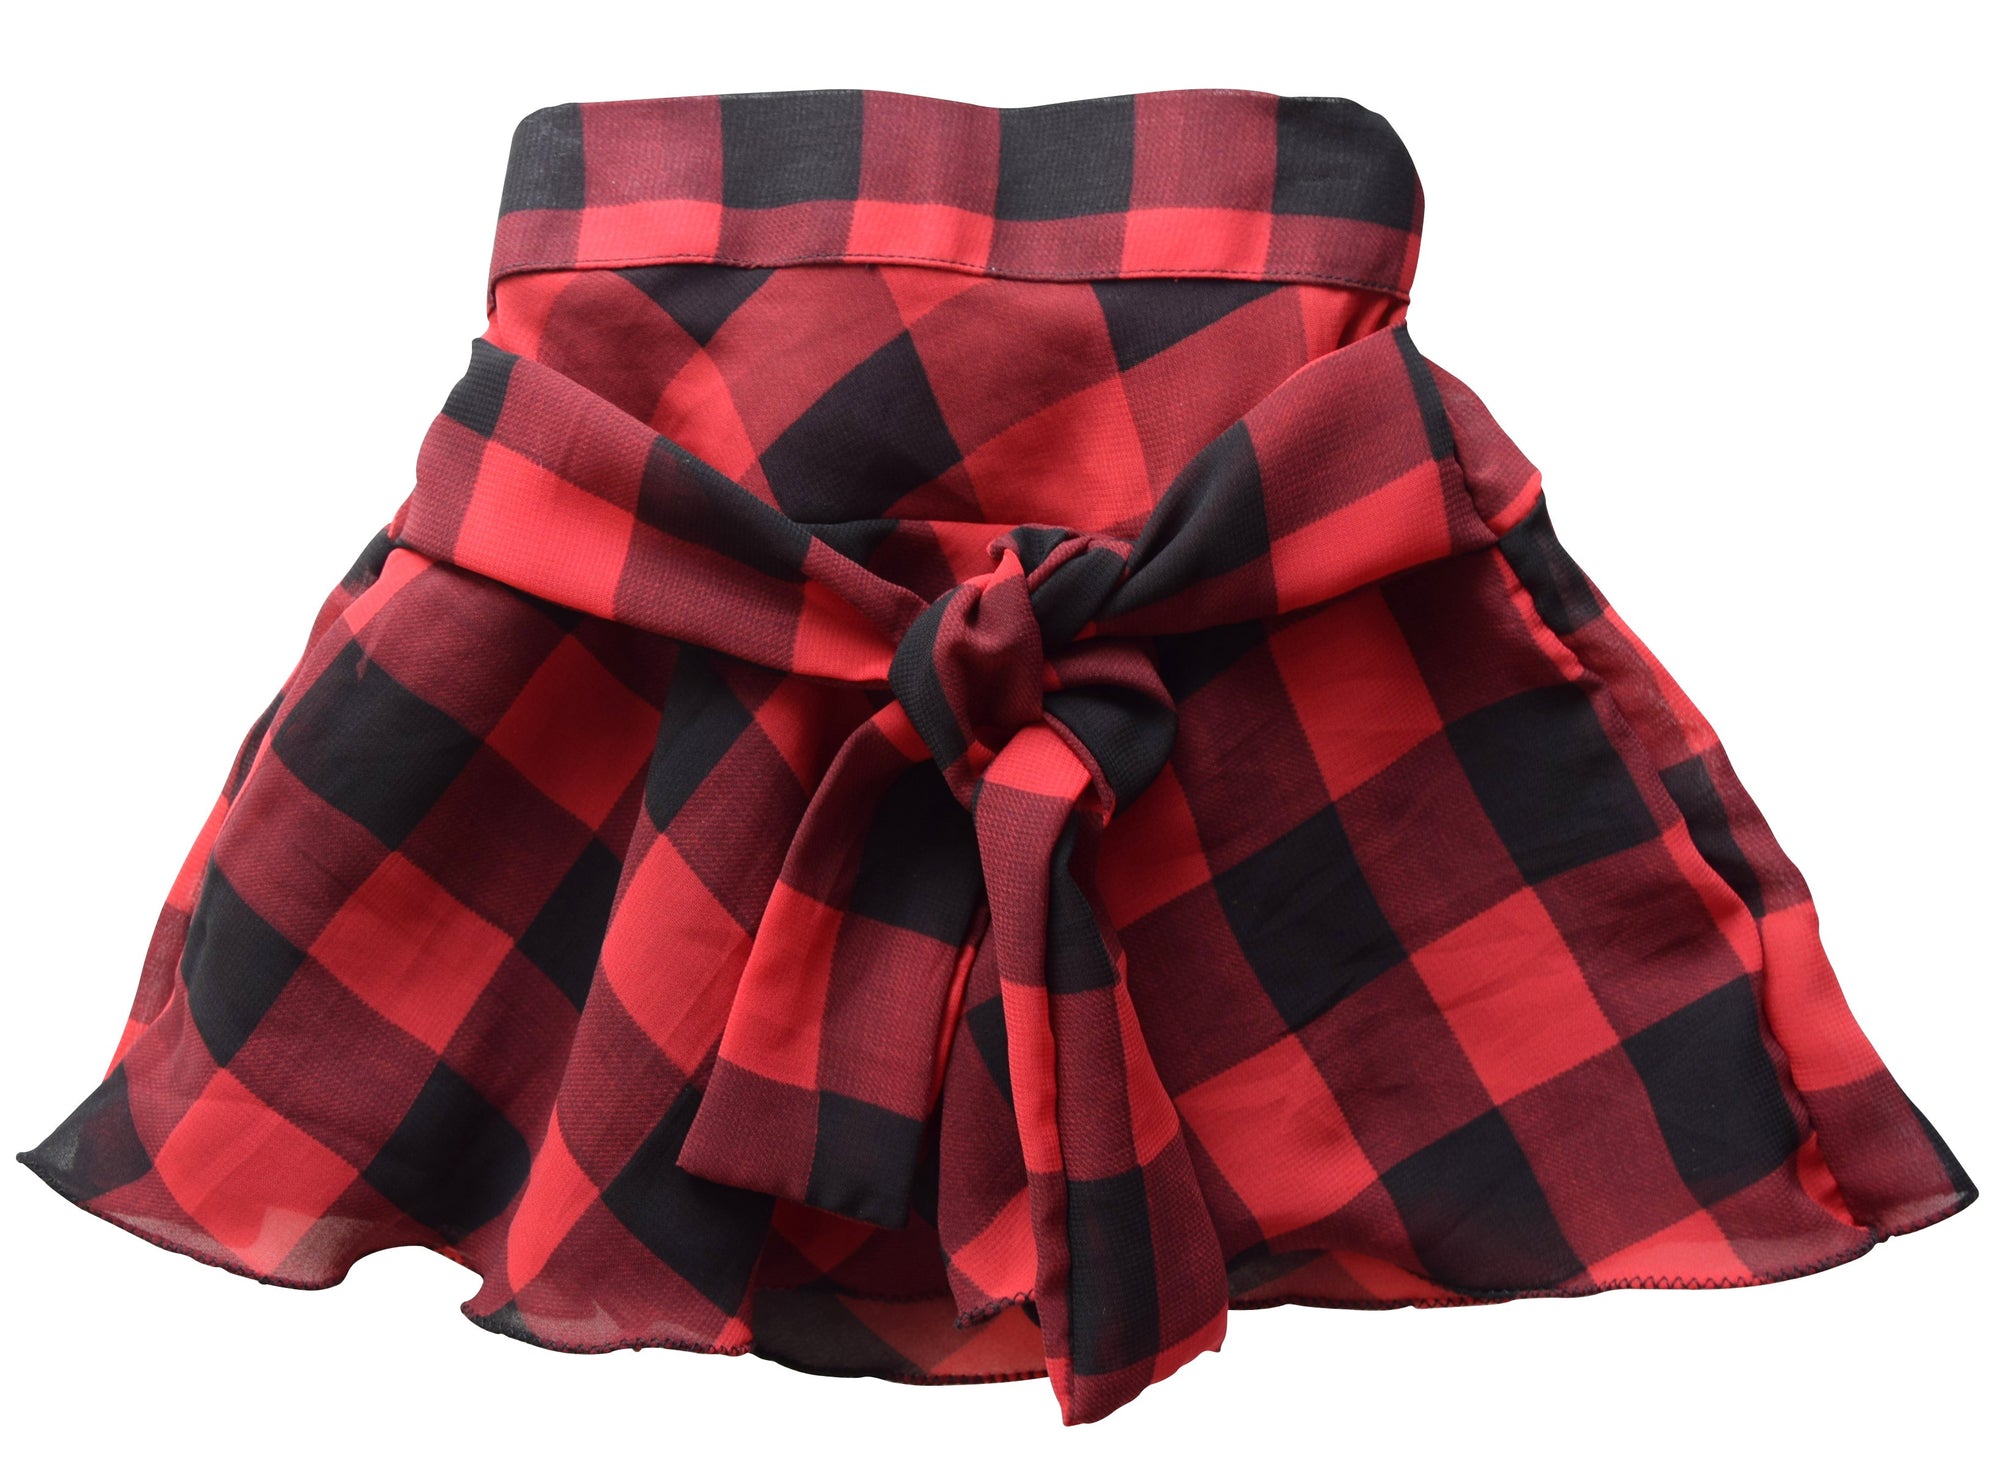 Skirt for Girls in Black & Red Checks 